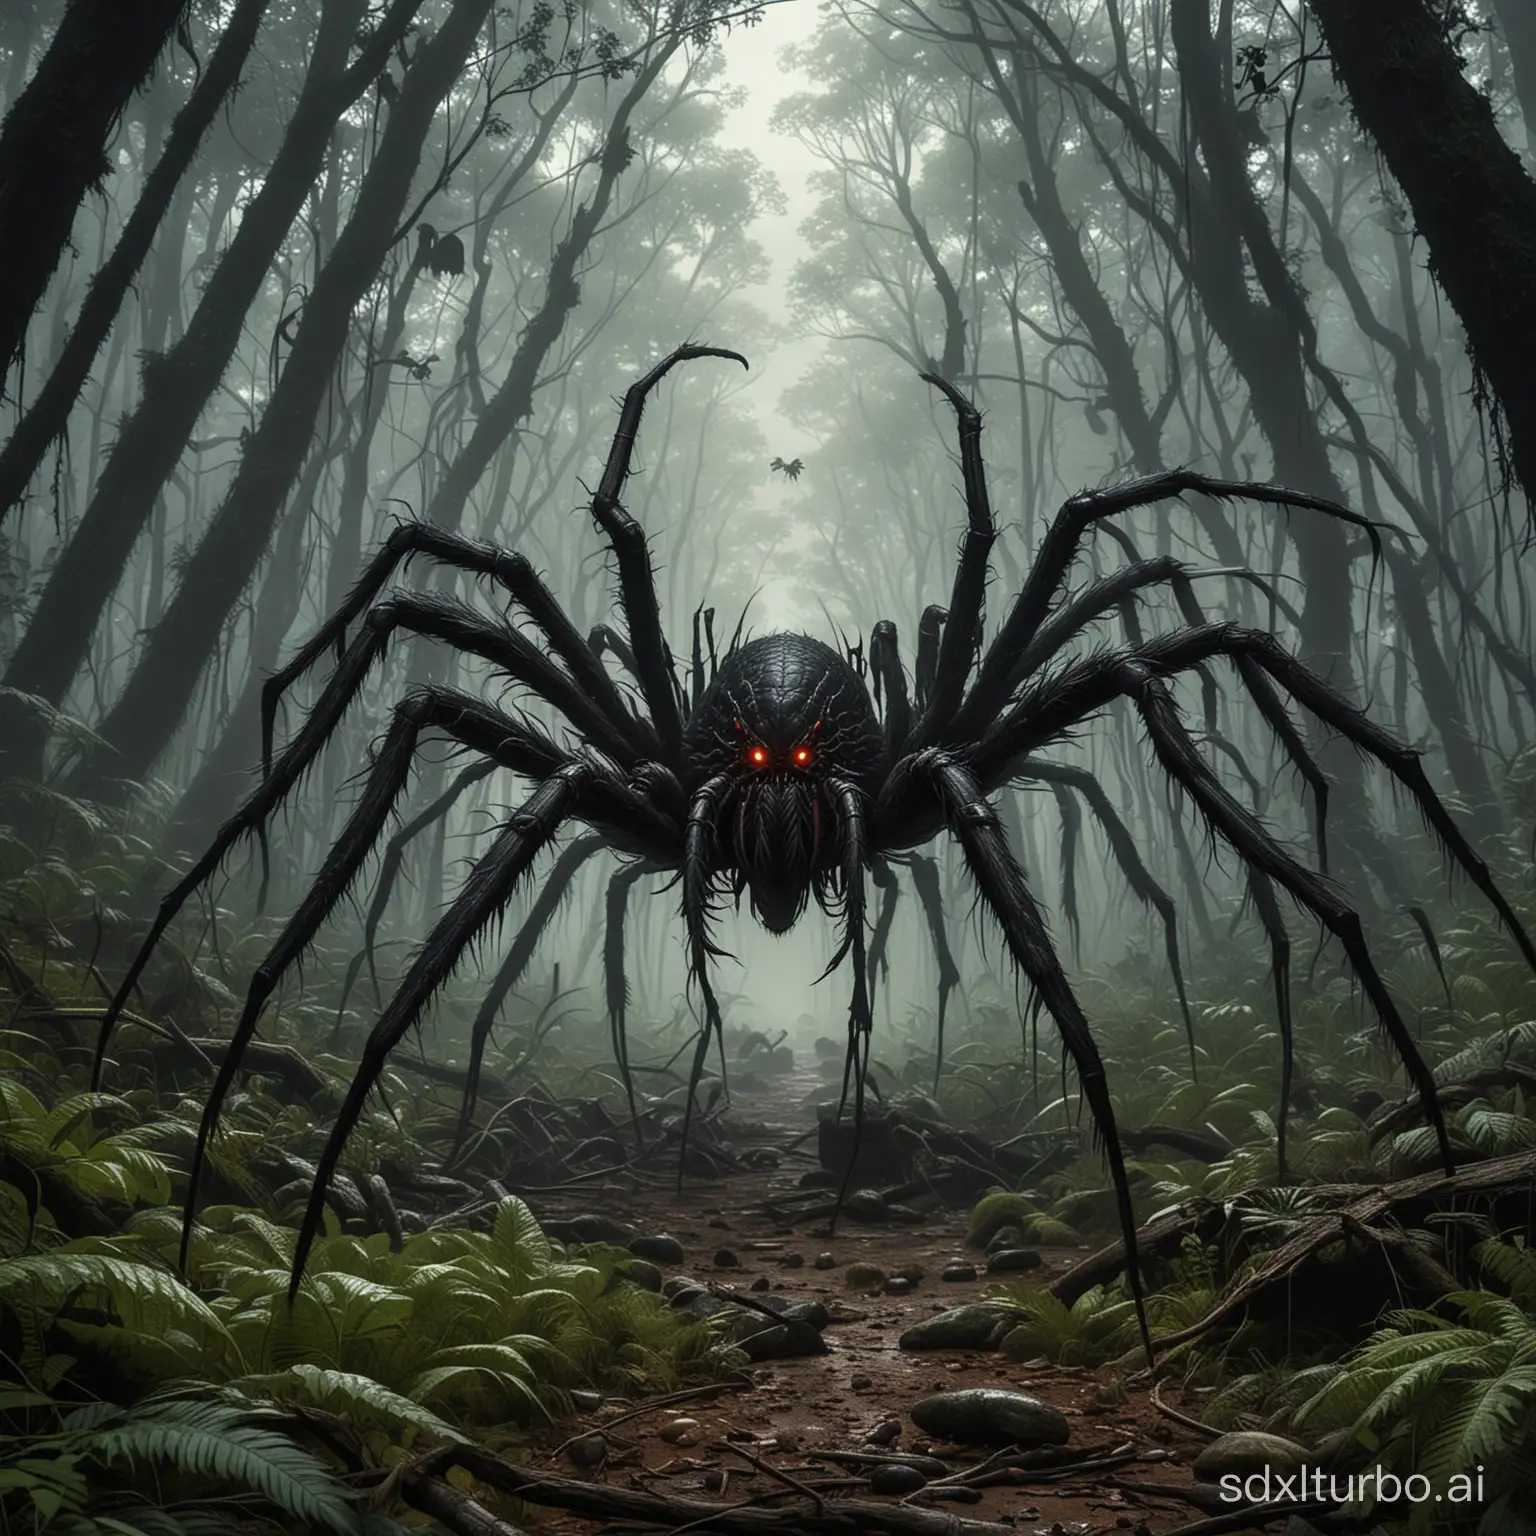 Imaginez une scène cauchemardesque où une horde d'araignées géantes envahit une forêt dense et sombre. Les arachnides monstrueuses, grandes comme des chariots et recouvertes de poils noirs luisants, rampent furtivement entre les arbres immenses, leurs huit pattes griffues écrasant
